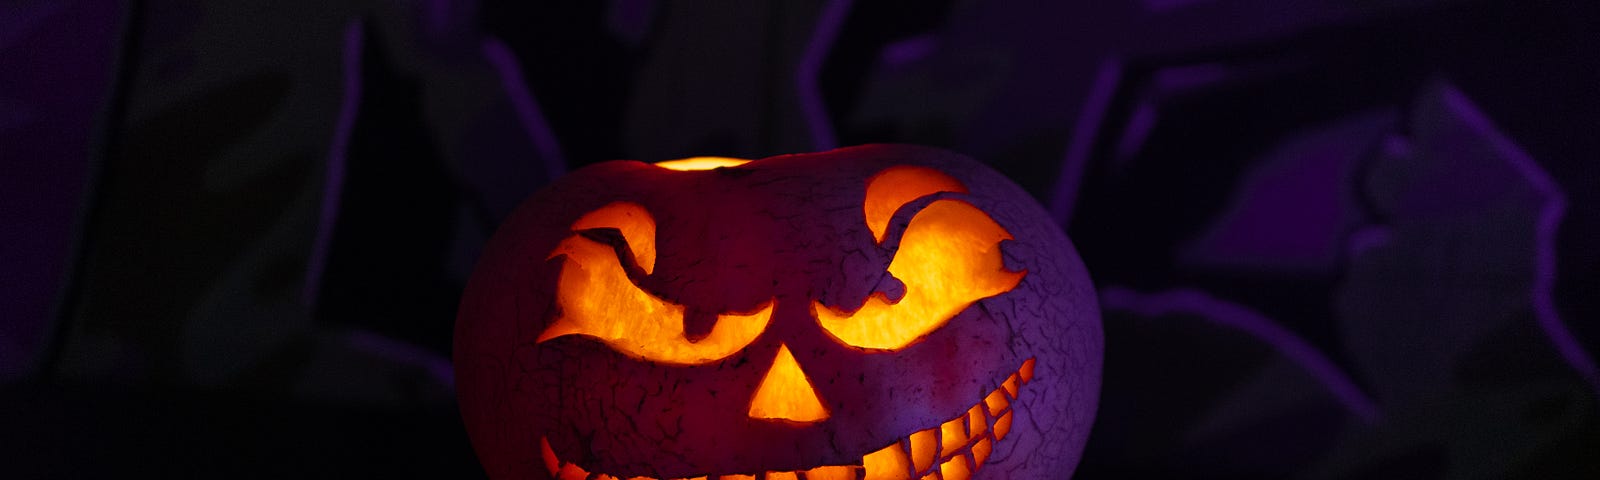 Scary looking Halloween pumpkin